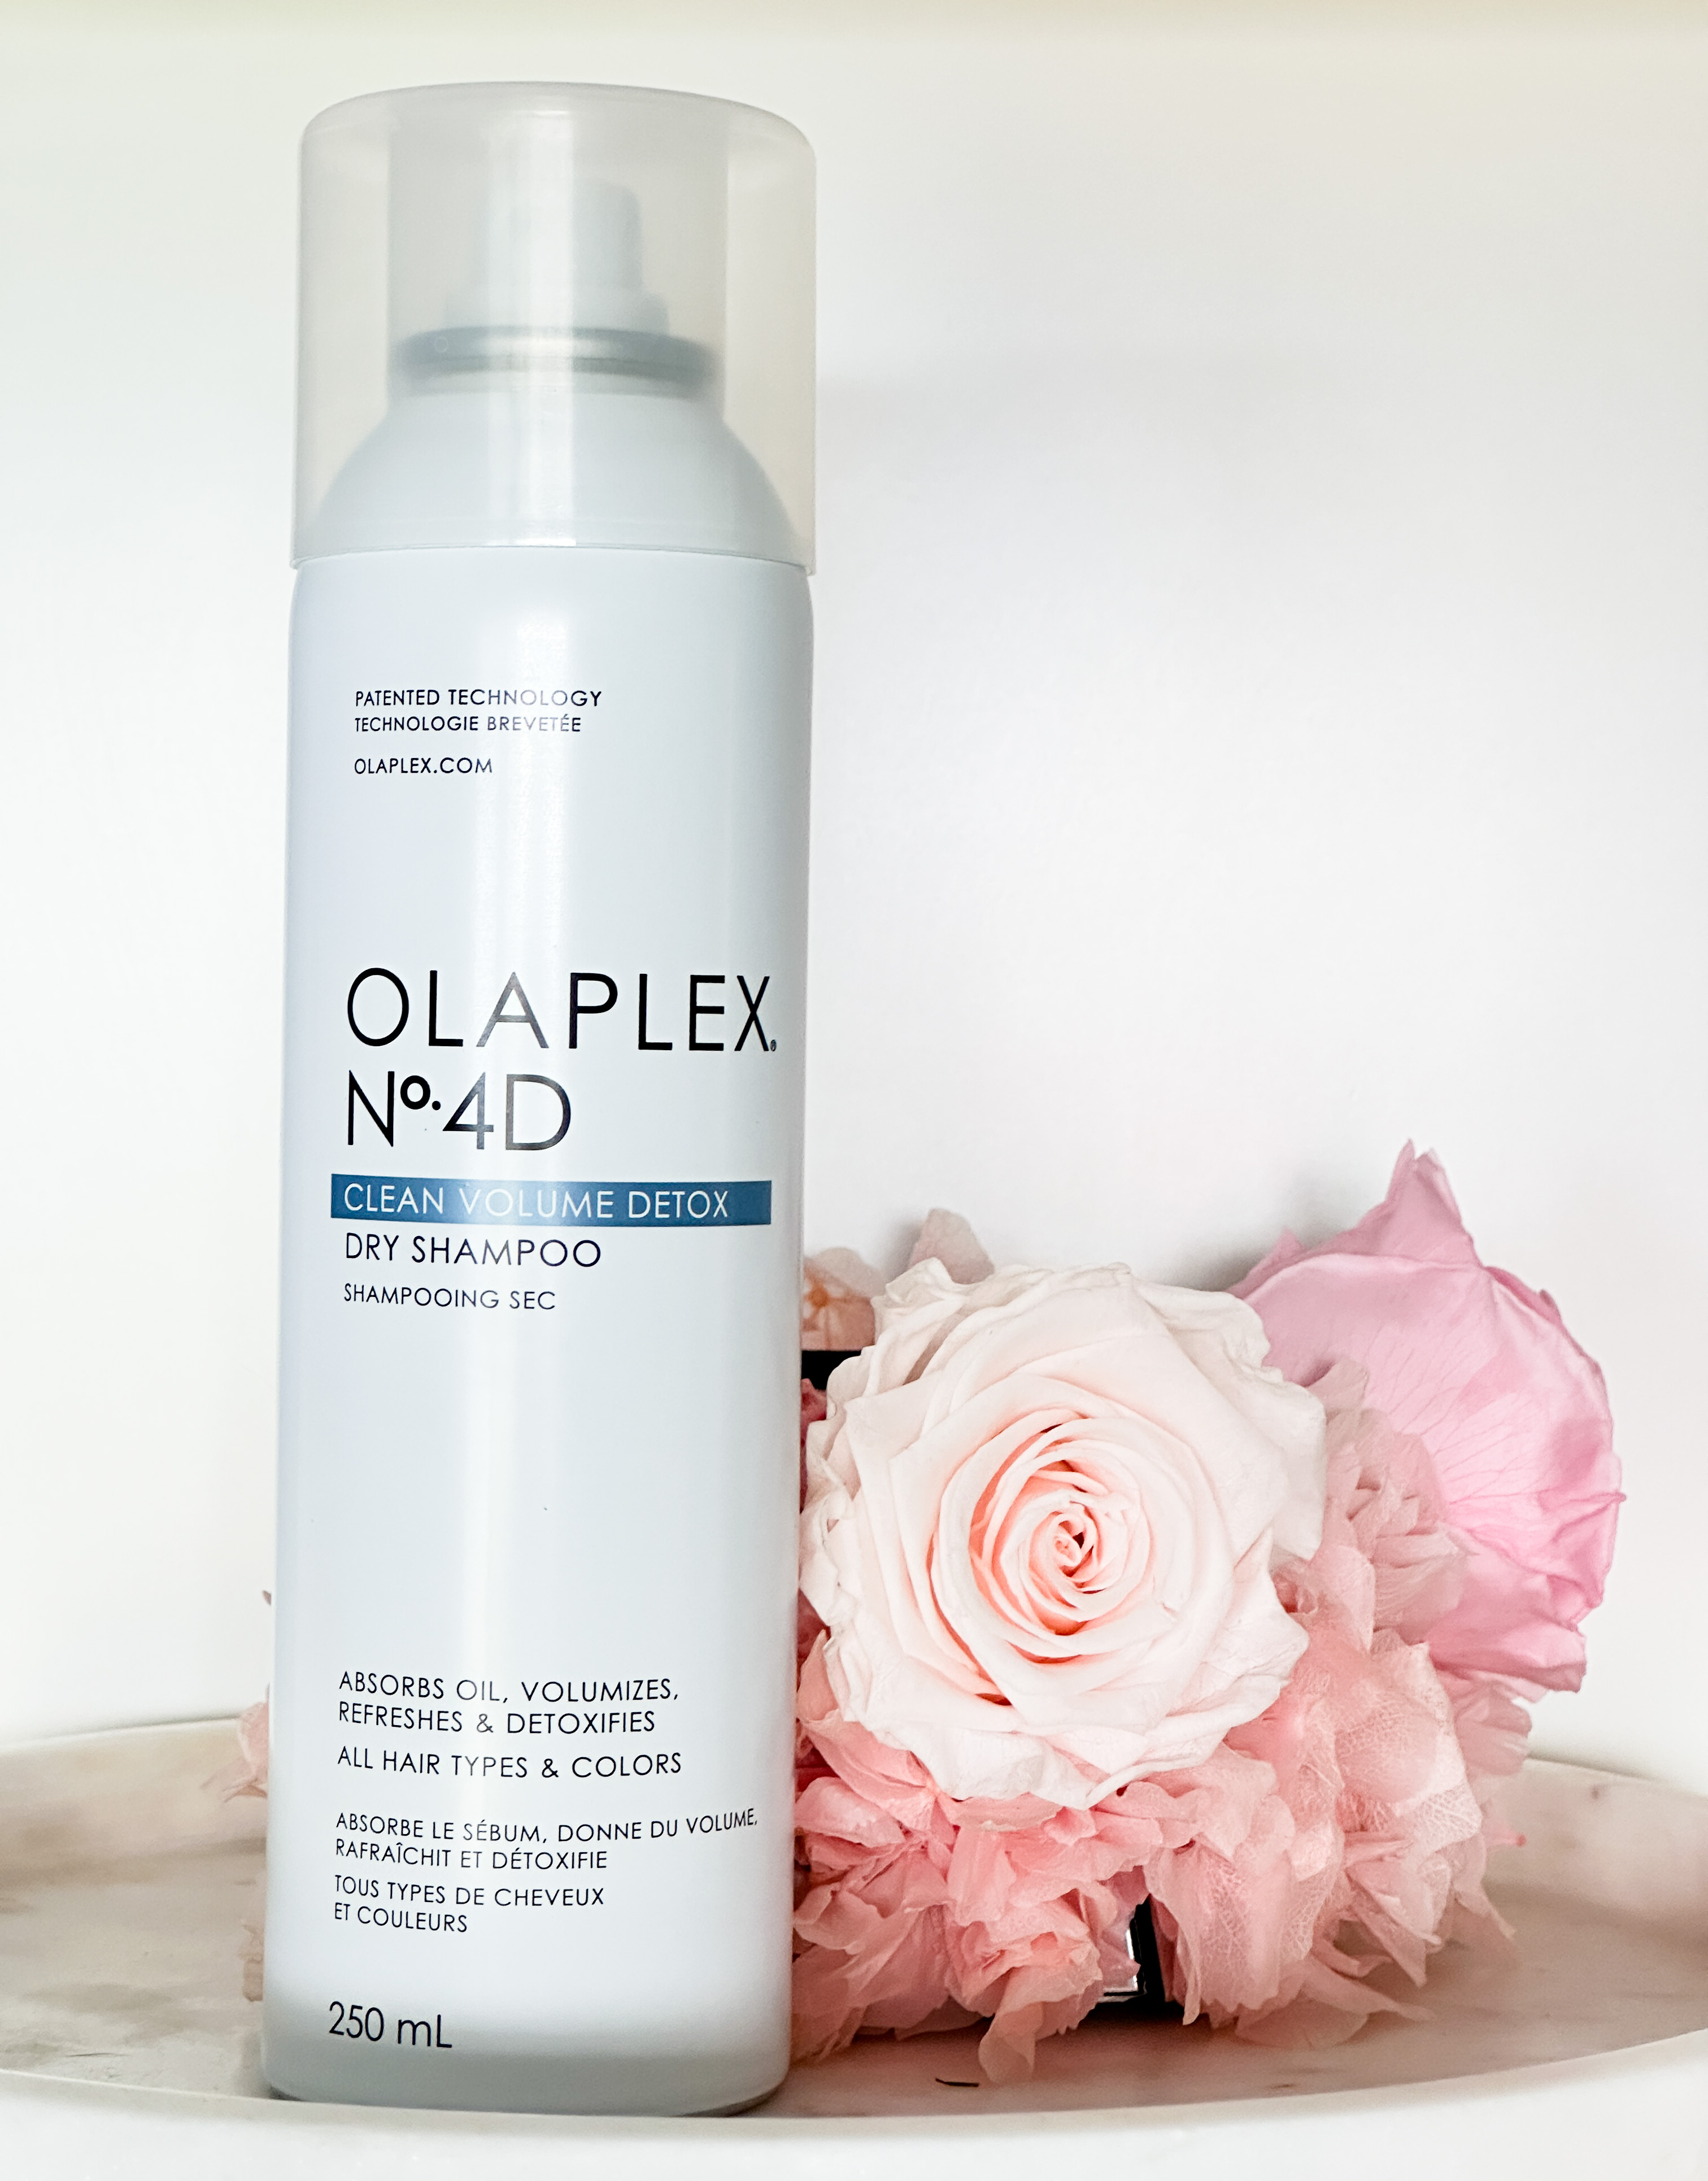 I'm an Olaplex lover but is their new dry shampoo worth the hype?